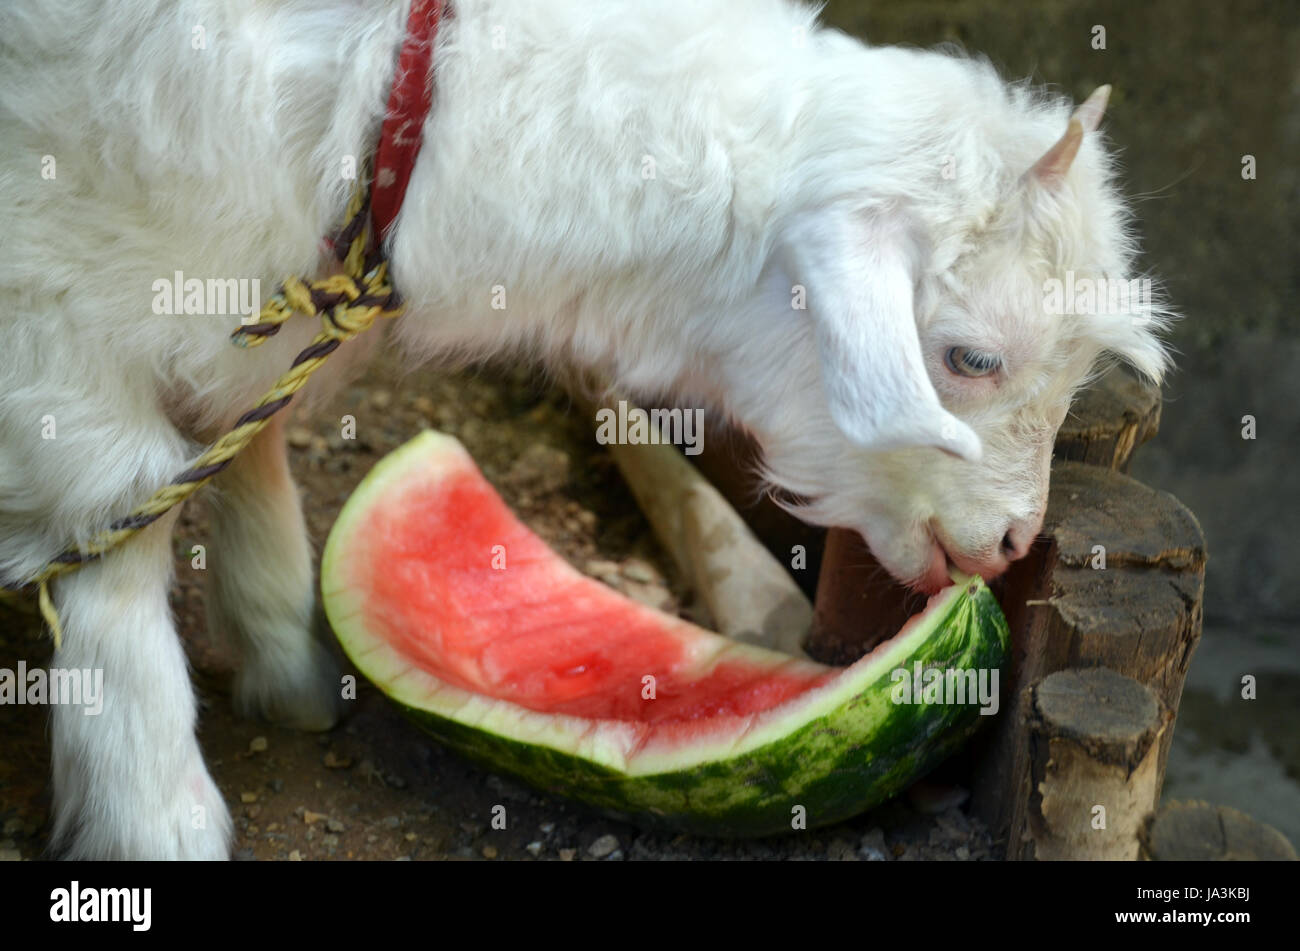 pet, goat, melon, watermelon, weie ziege, fressende ziege, melonenschale, ziege Stock Photo